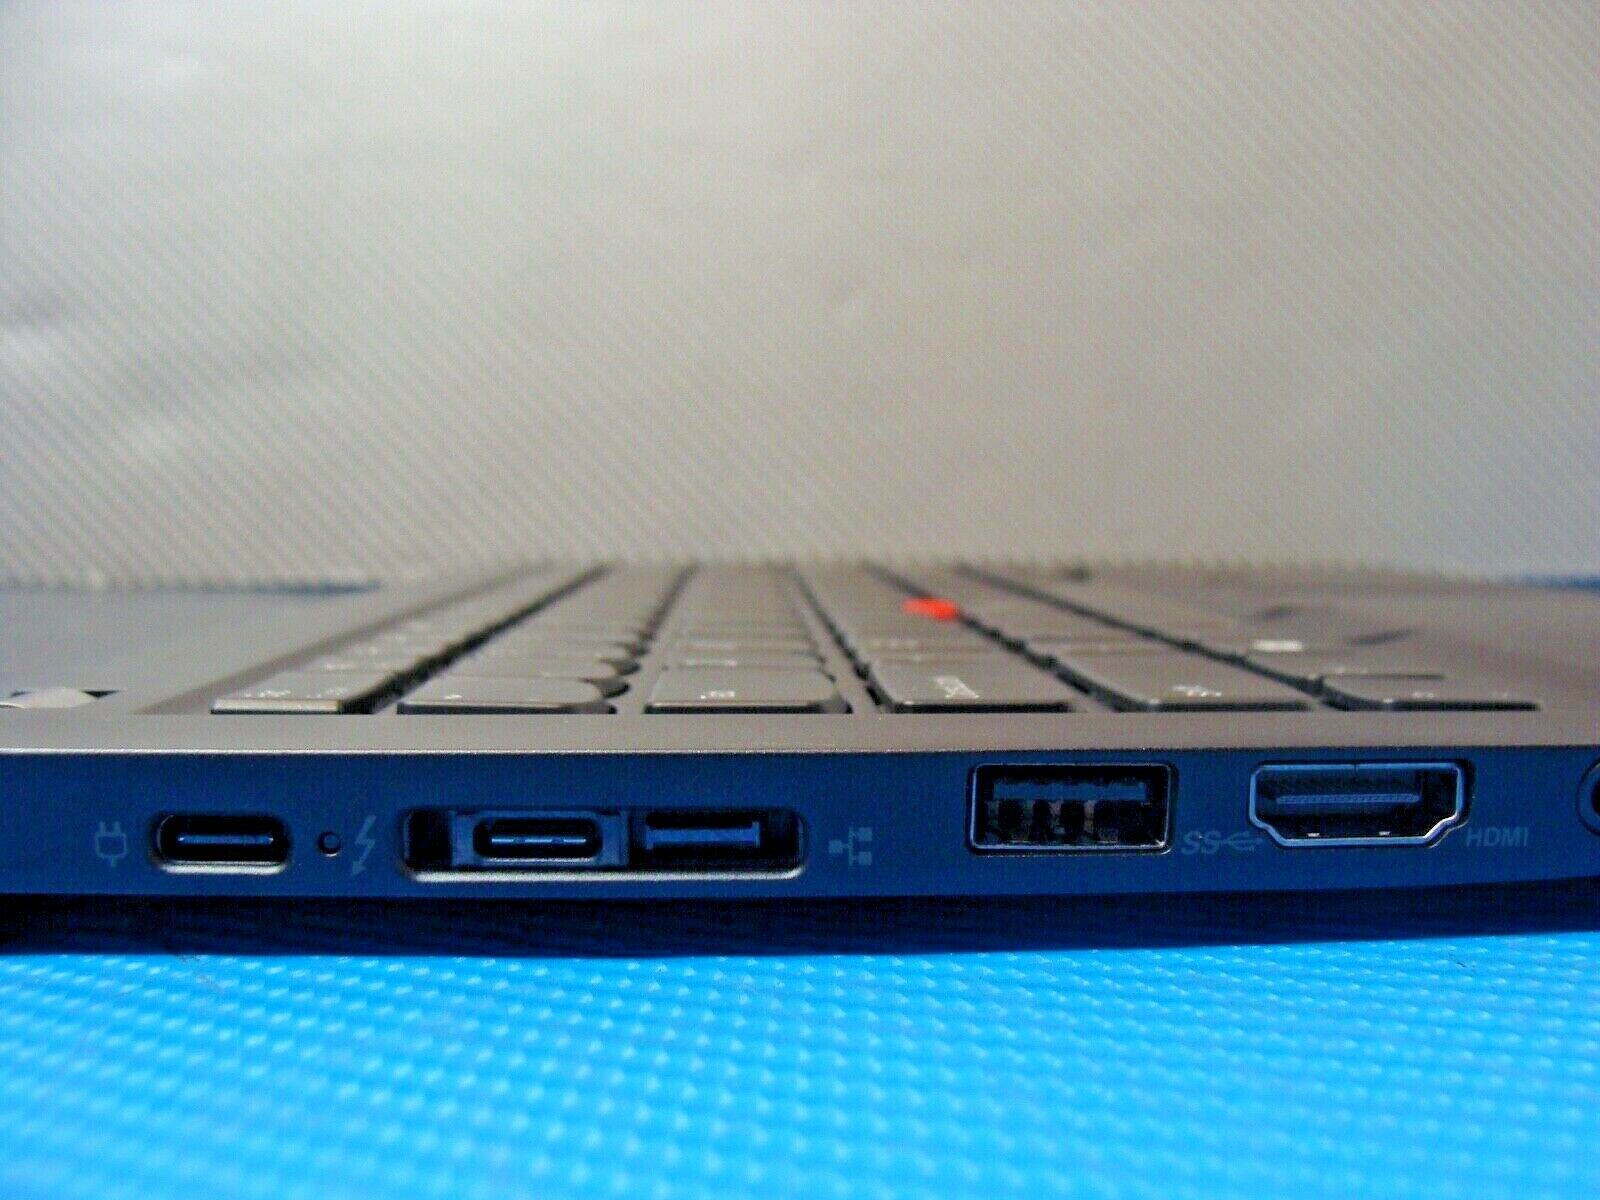 Lenovo ThinkPad T14s 14